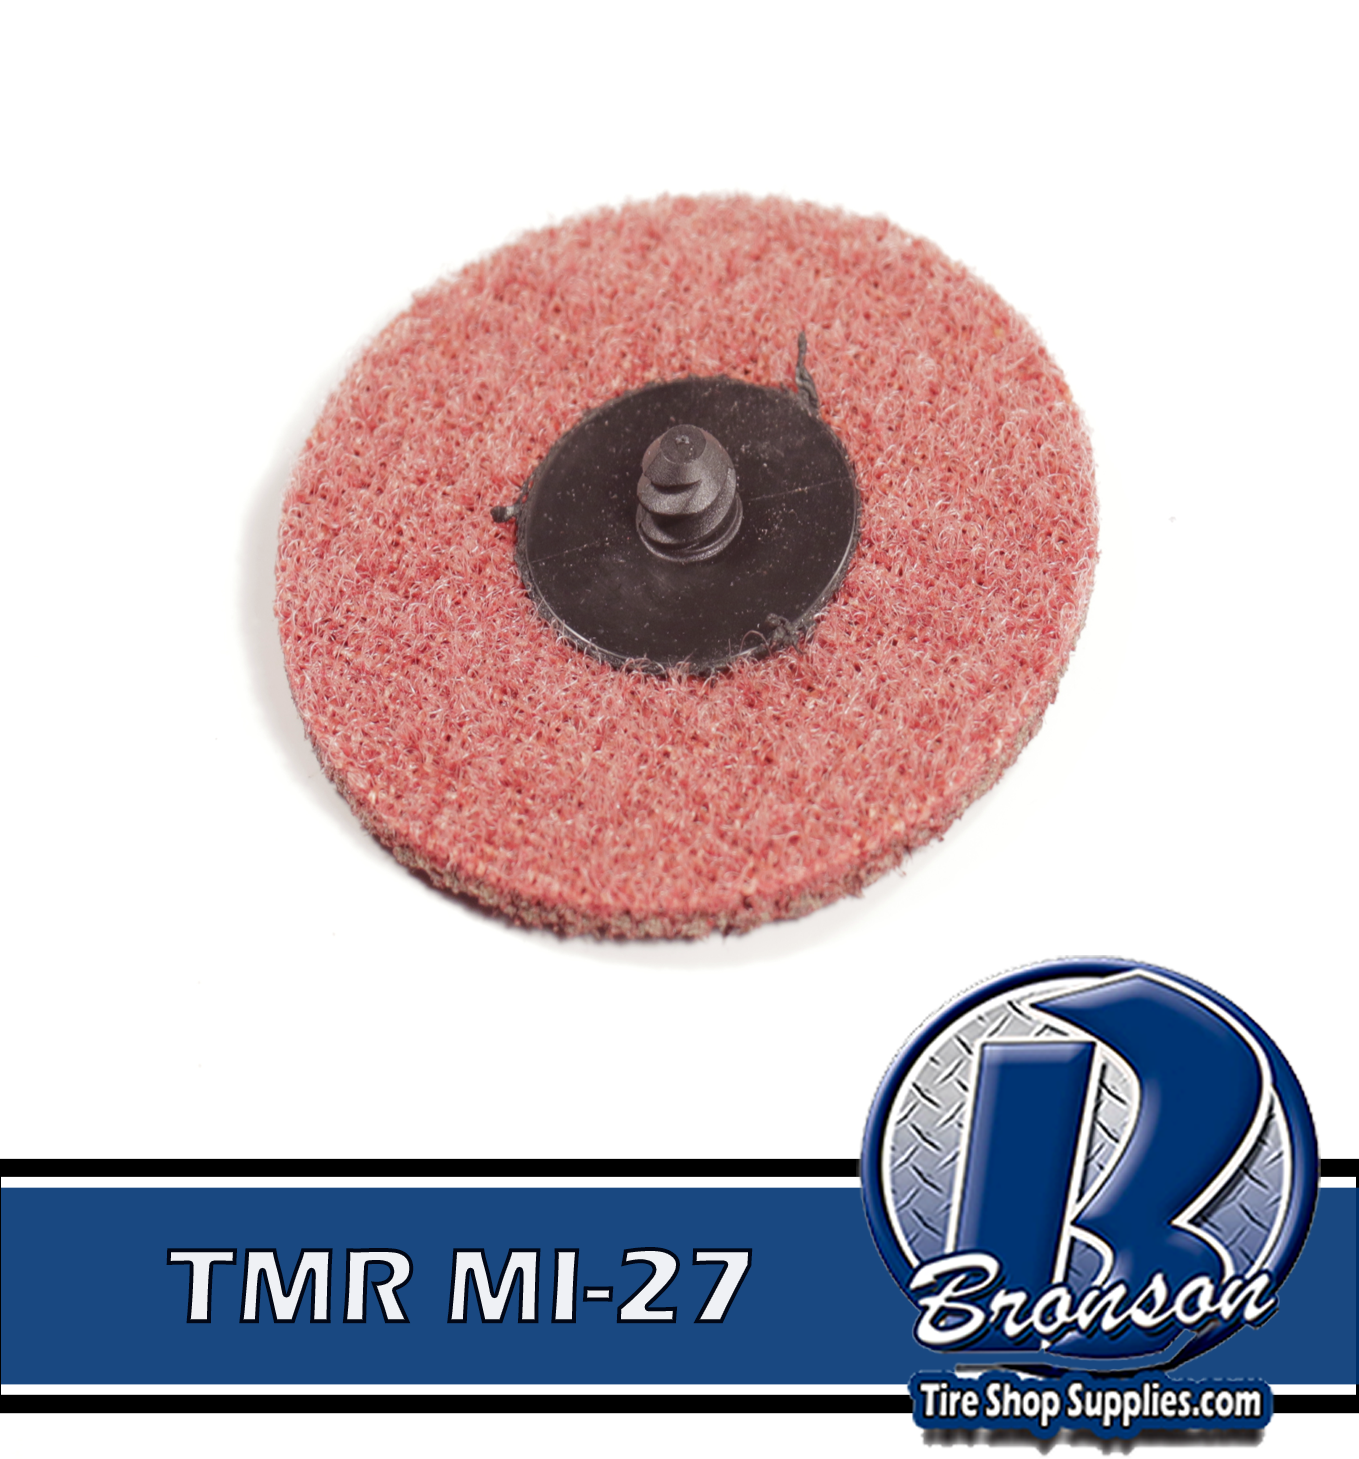 TMR MI-27 3' SURFACE COND